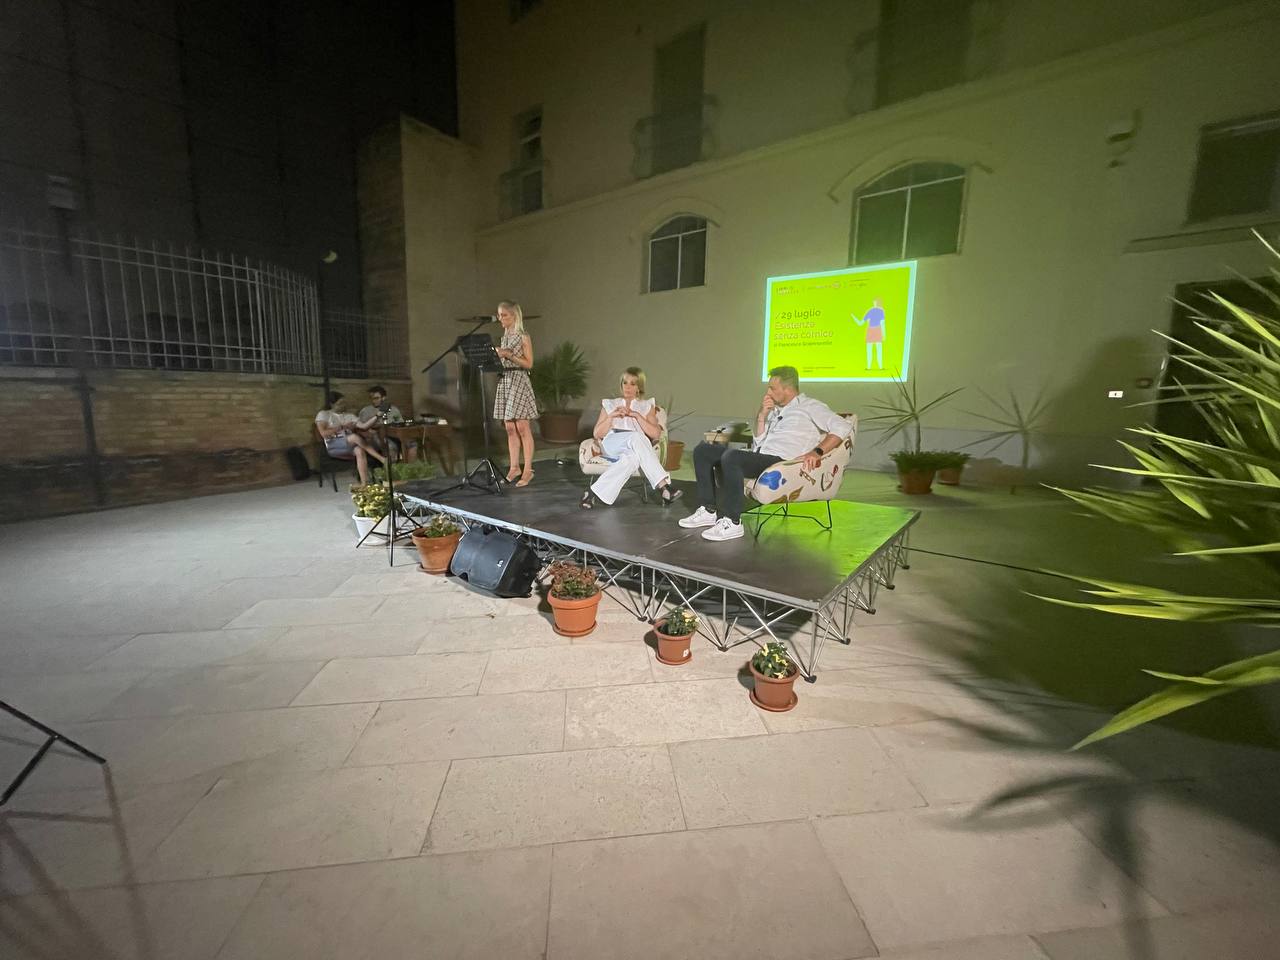 Dal 21 al 25 giugno torna a Matera "Libri in Terrazza" il Festival culturale promosso dall’Associazione Liberalia in collaborazione con Altrimedia Edizioni